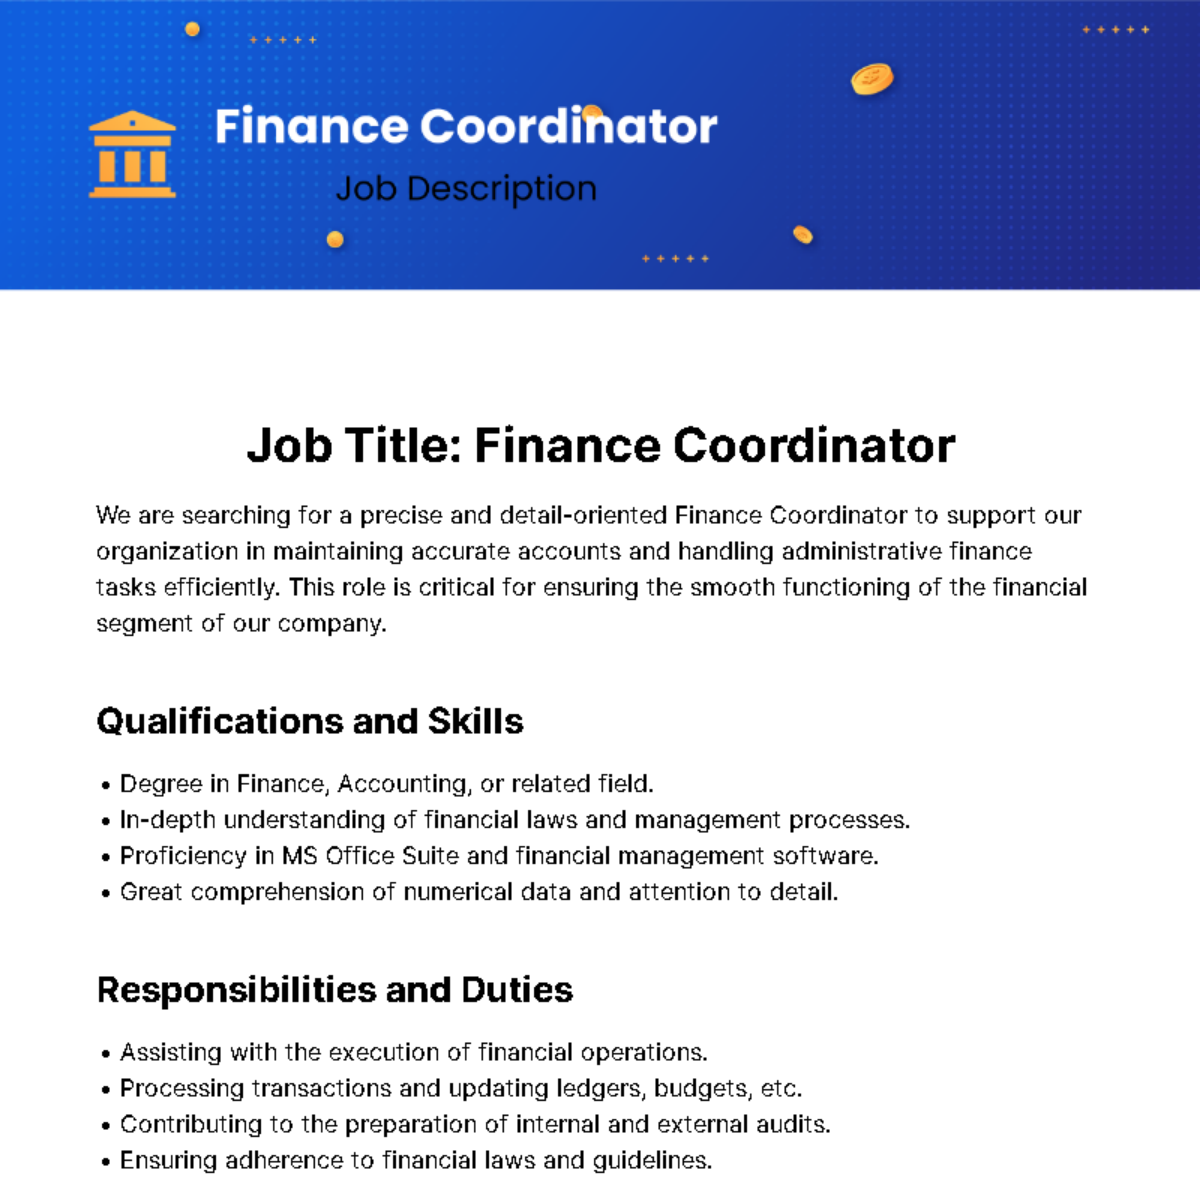 Finance Coordinator Job Description Template